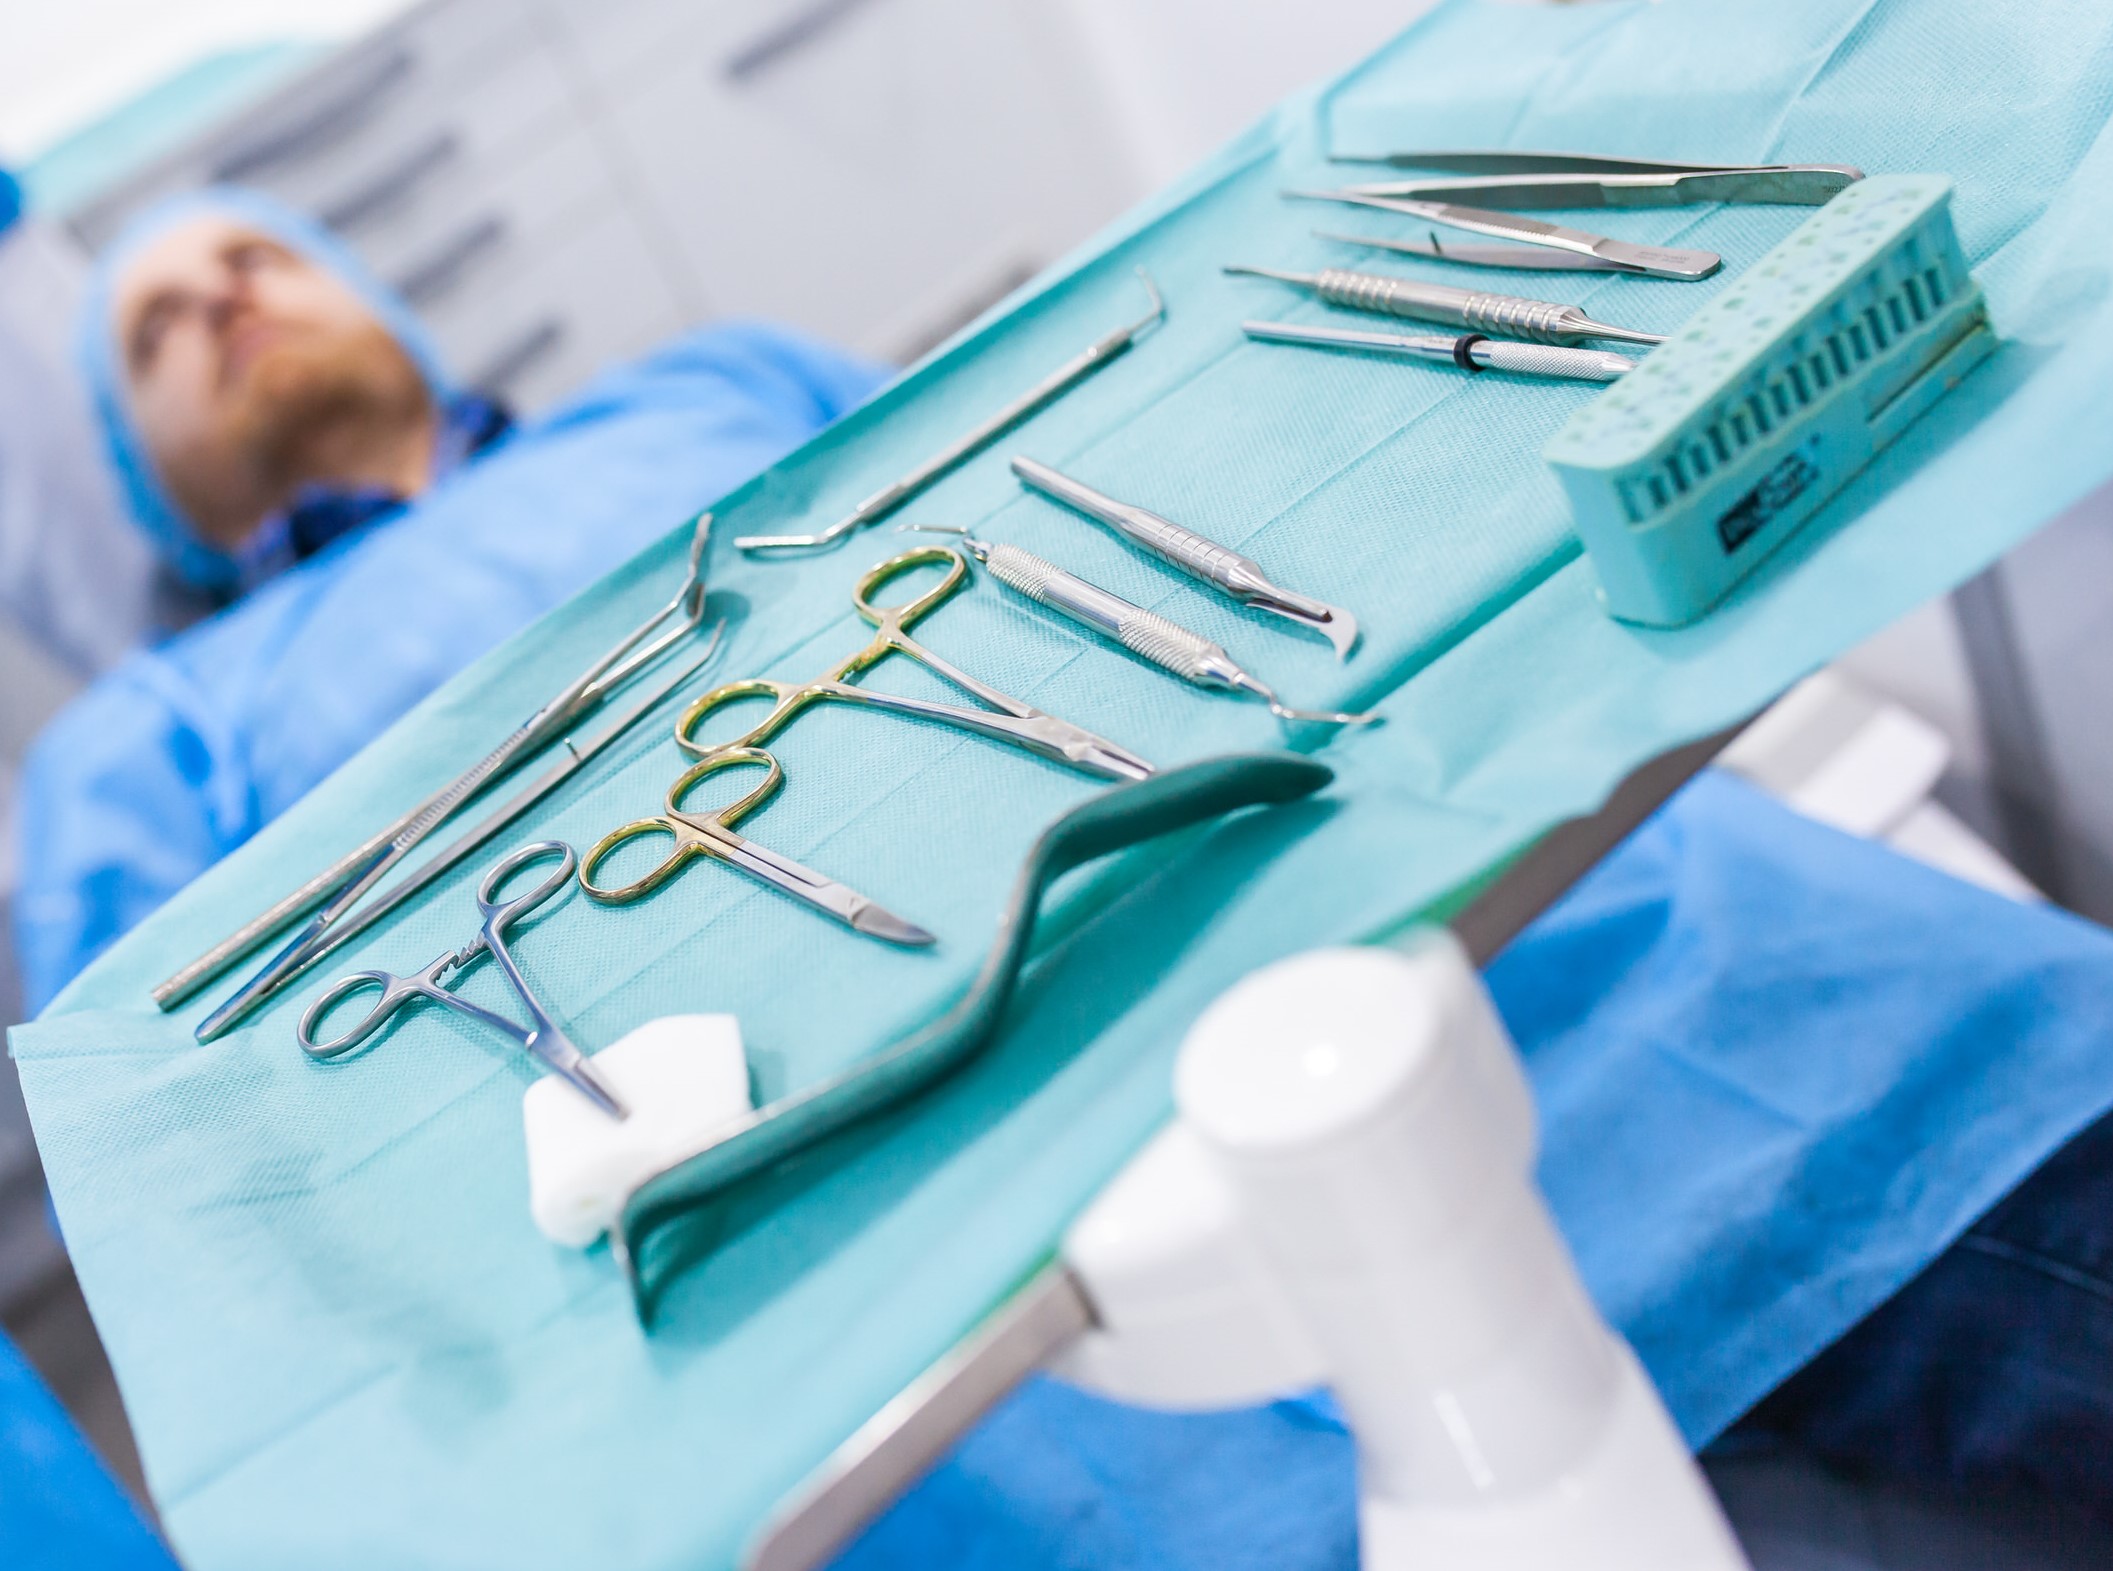 cirugía oral en Burjassot - herramientas